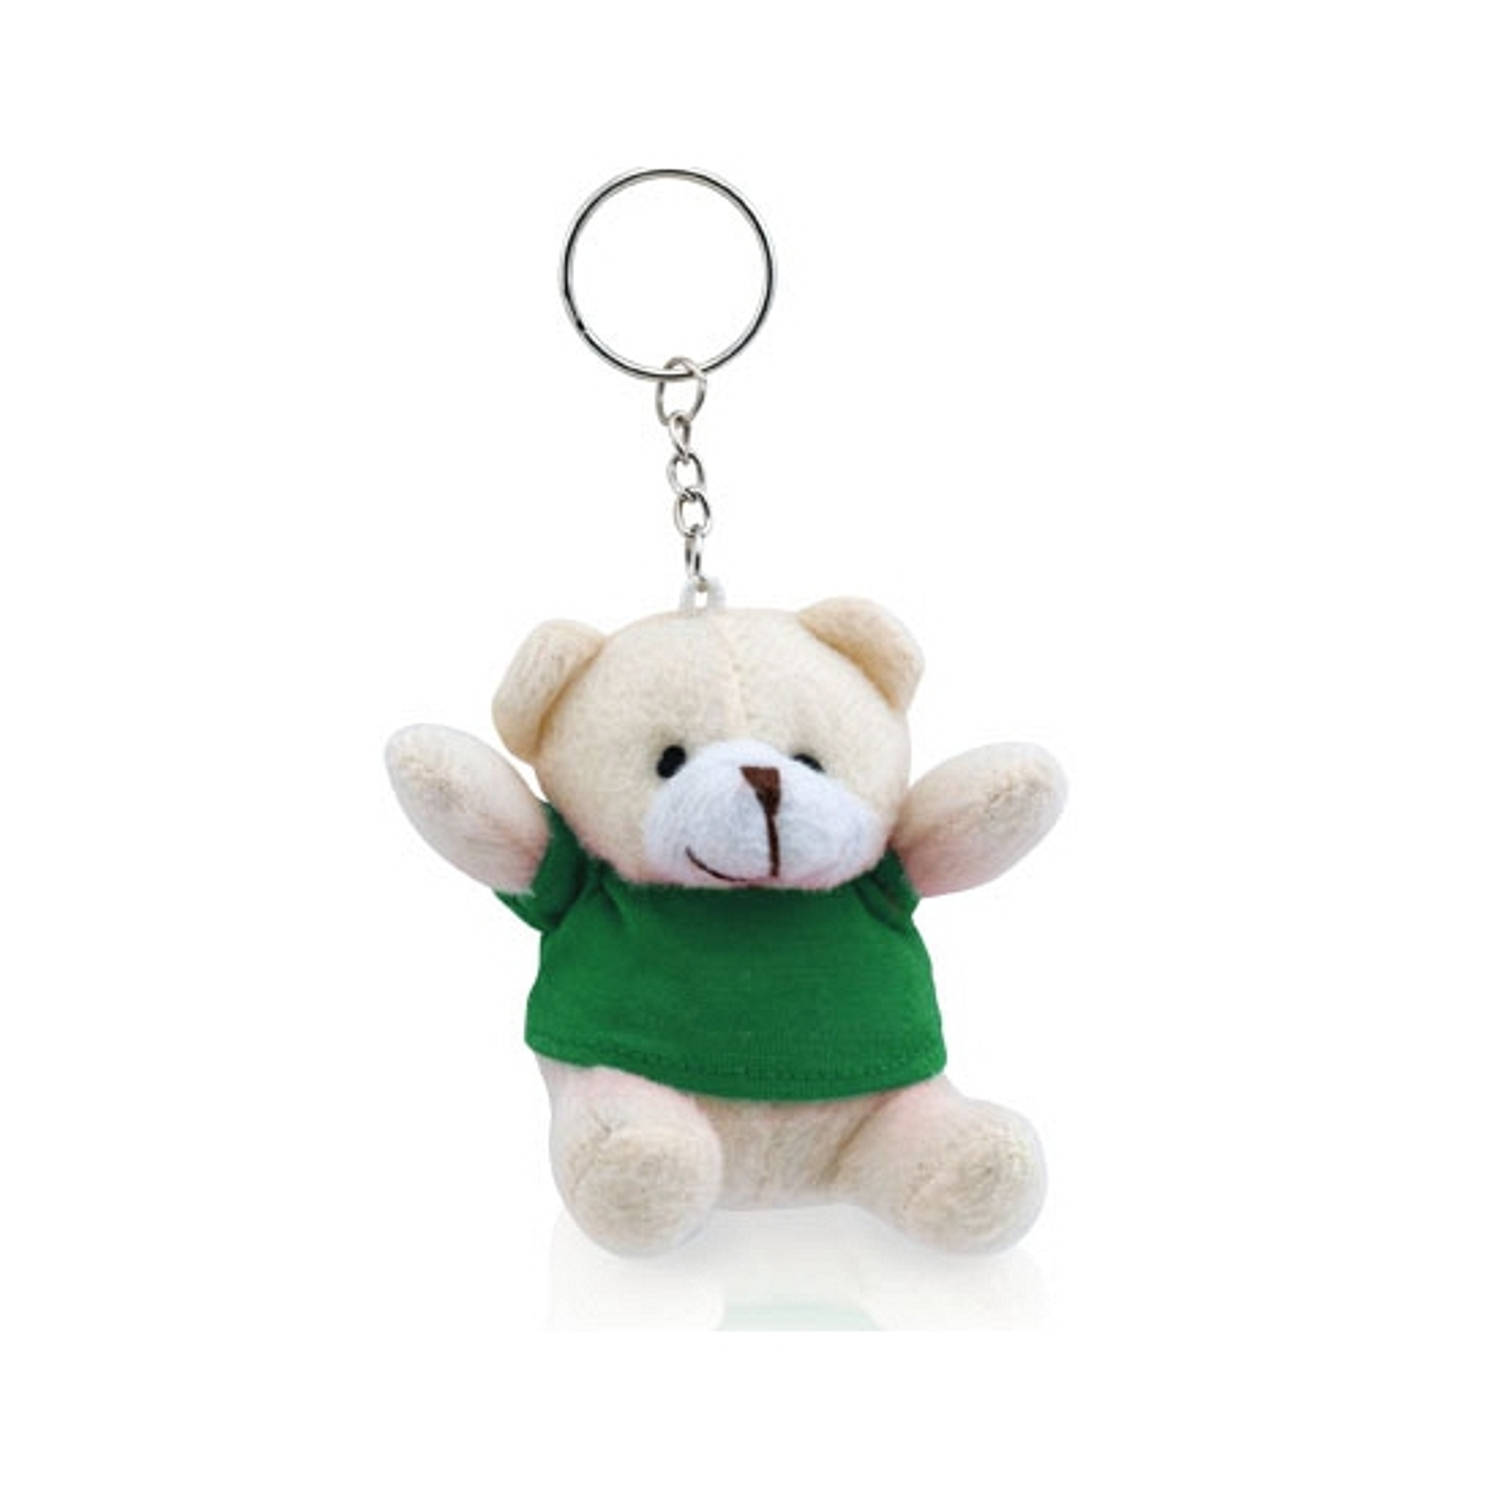 Pluche Teddybeer Knuffel Sleutelhanger Groen 8 Cm Beren Dieren Sleutelhangers Speelgoed Voor Kindere